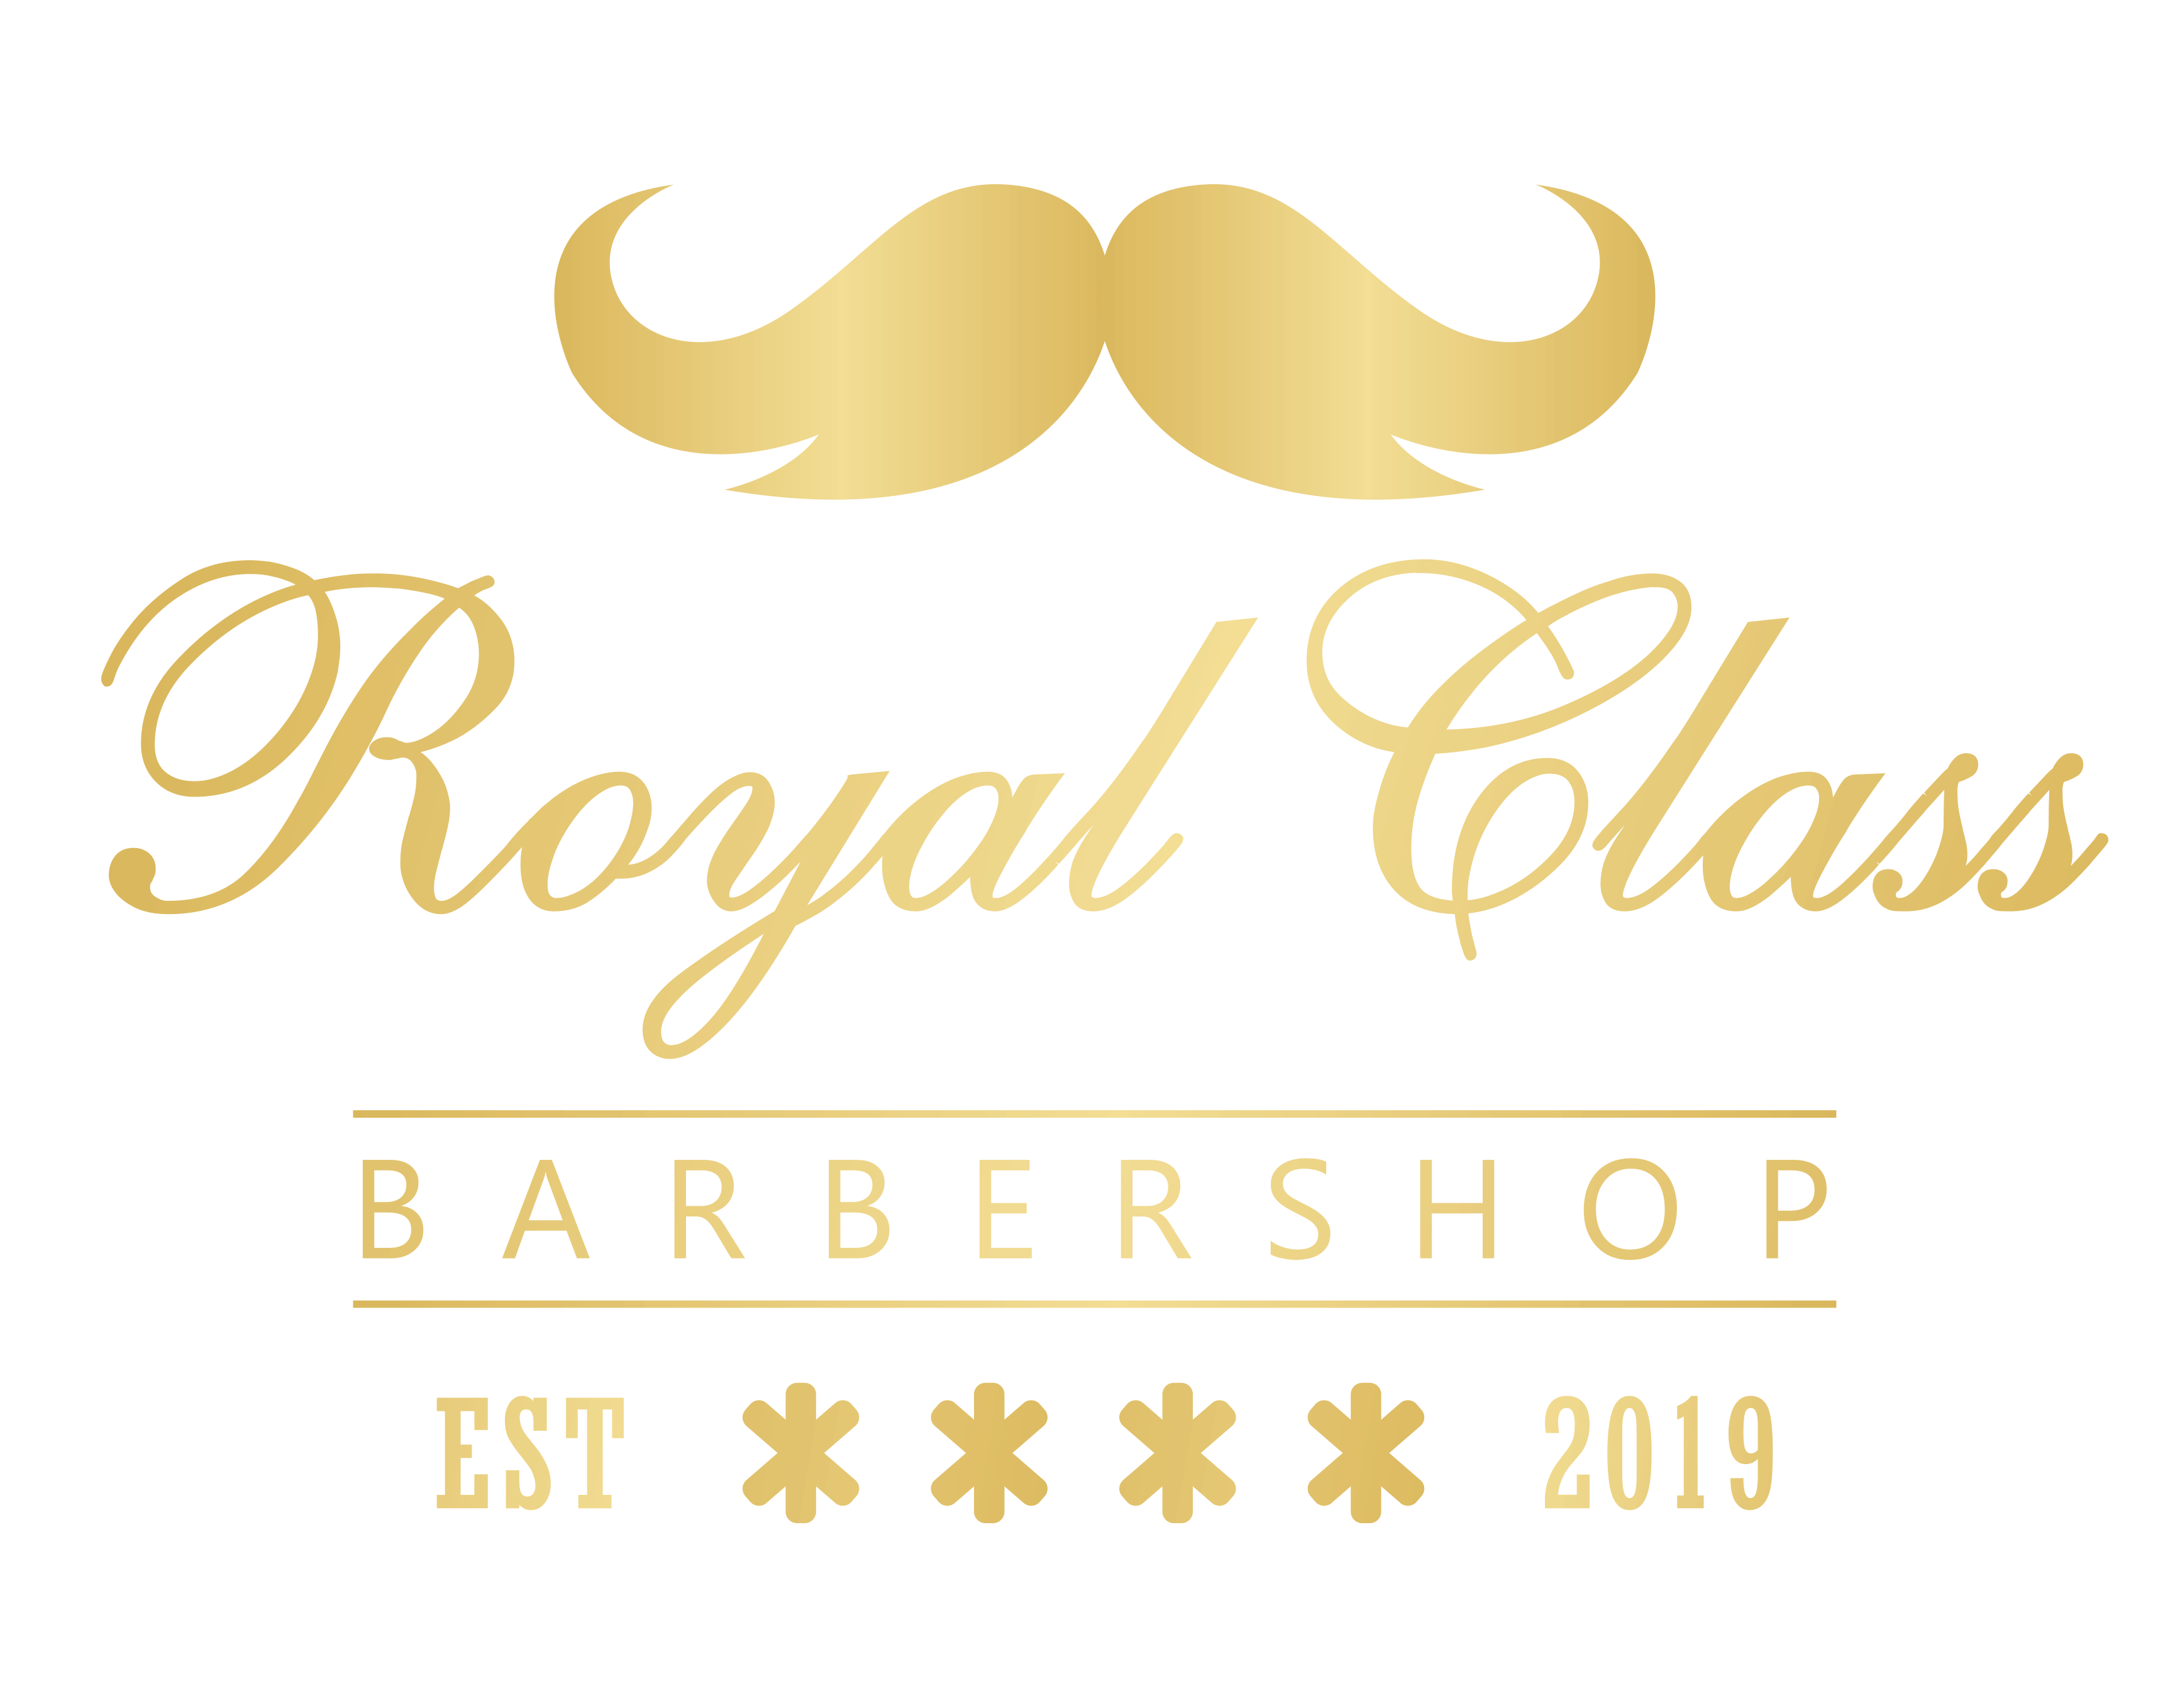 Royal Class Barbershop Aalsmeer logo